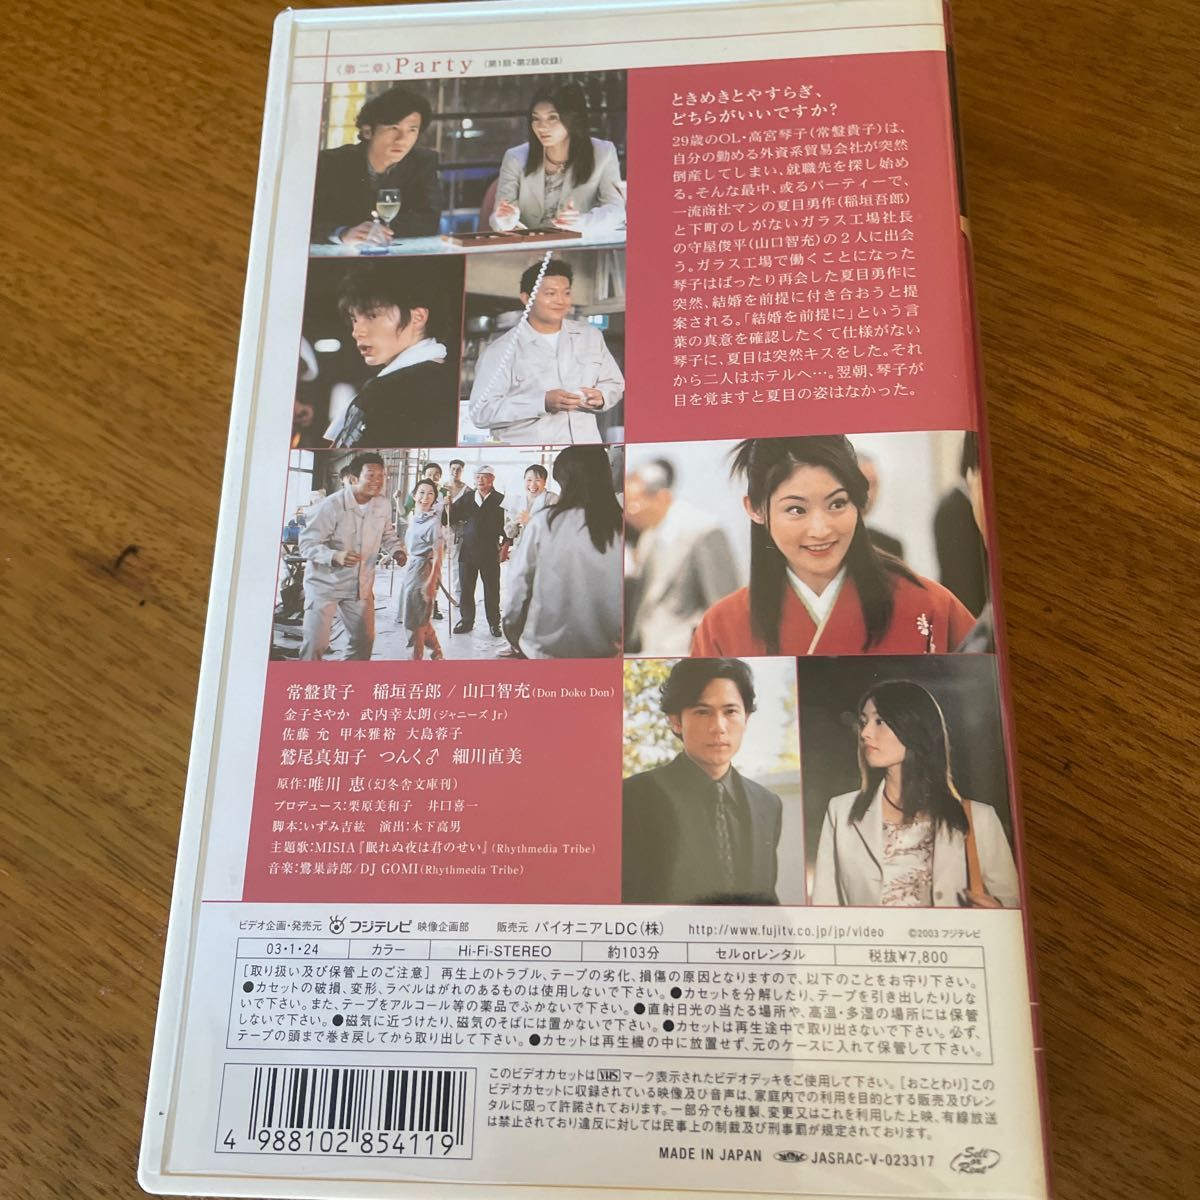 恋愛偏差値 第二章 Party vol.3 常盤貴子/稲垣吾郎 VHS